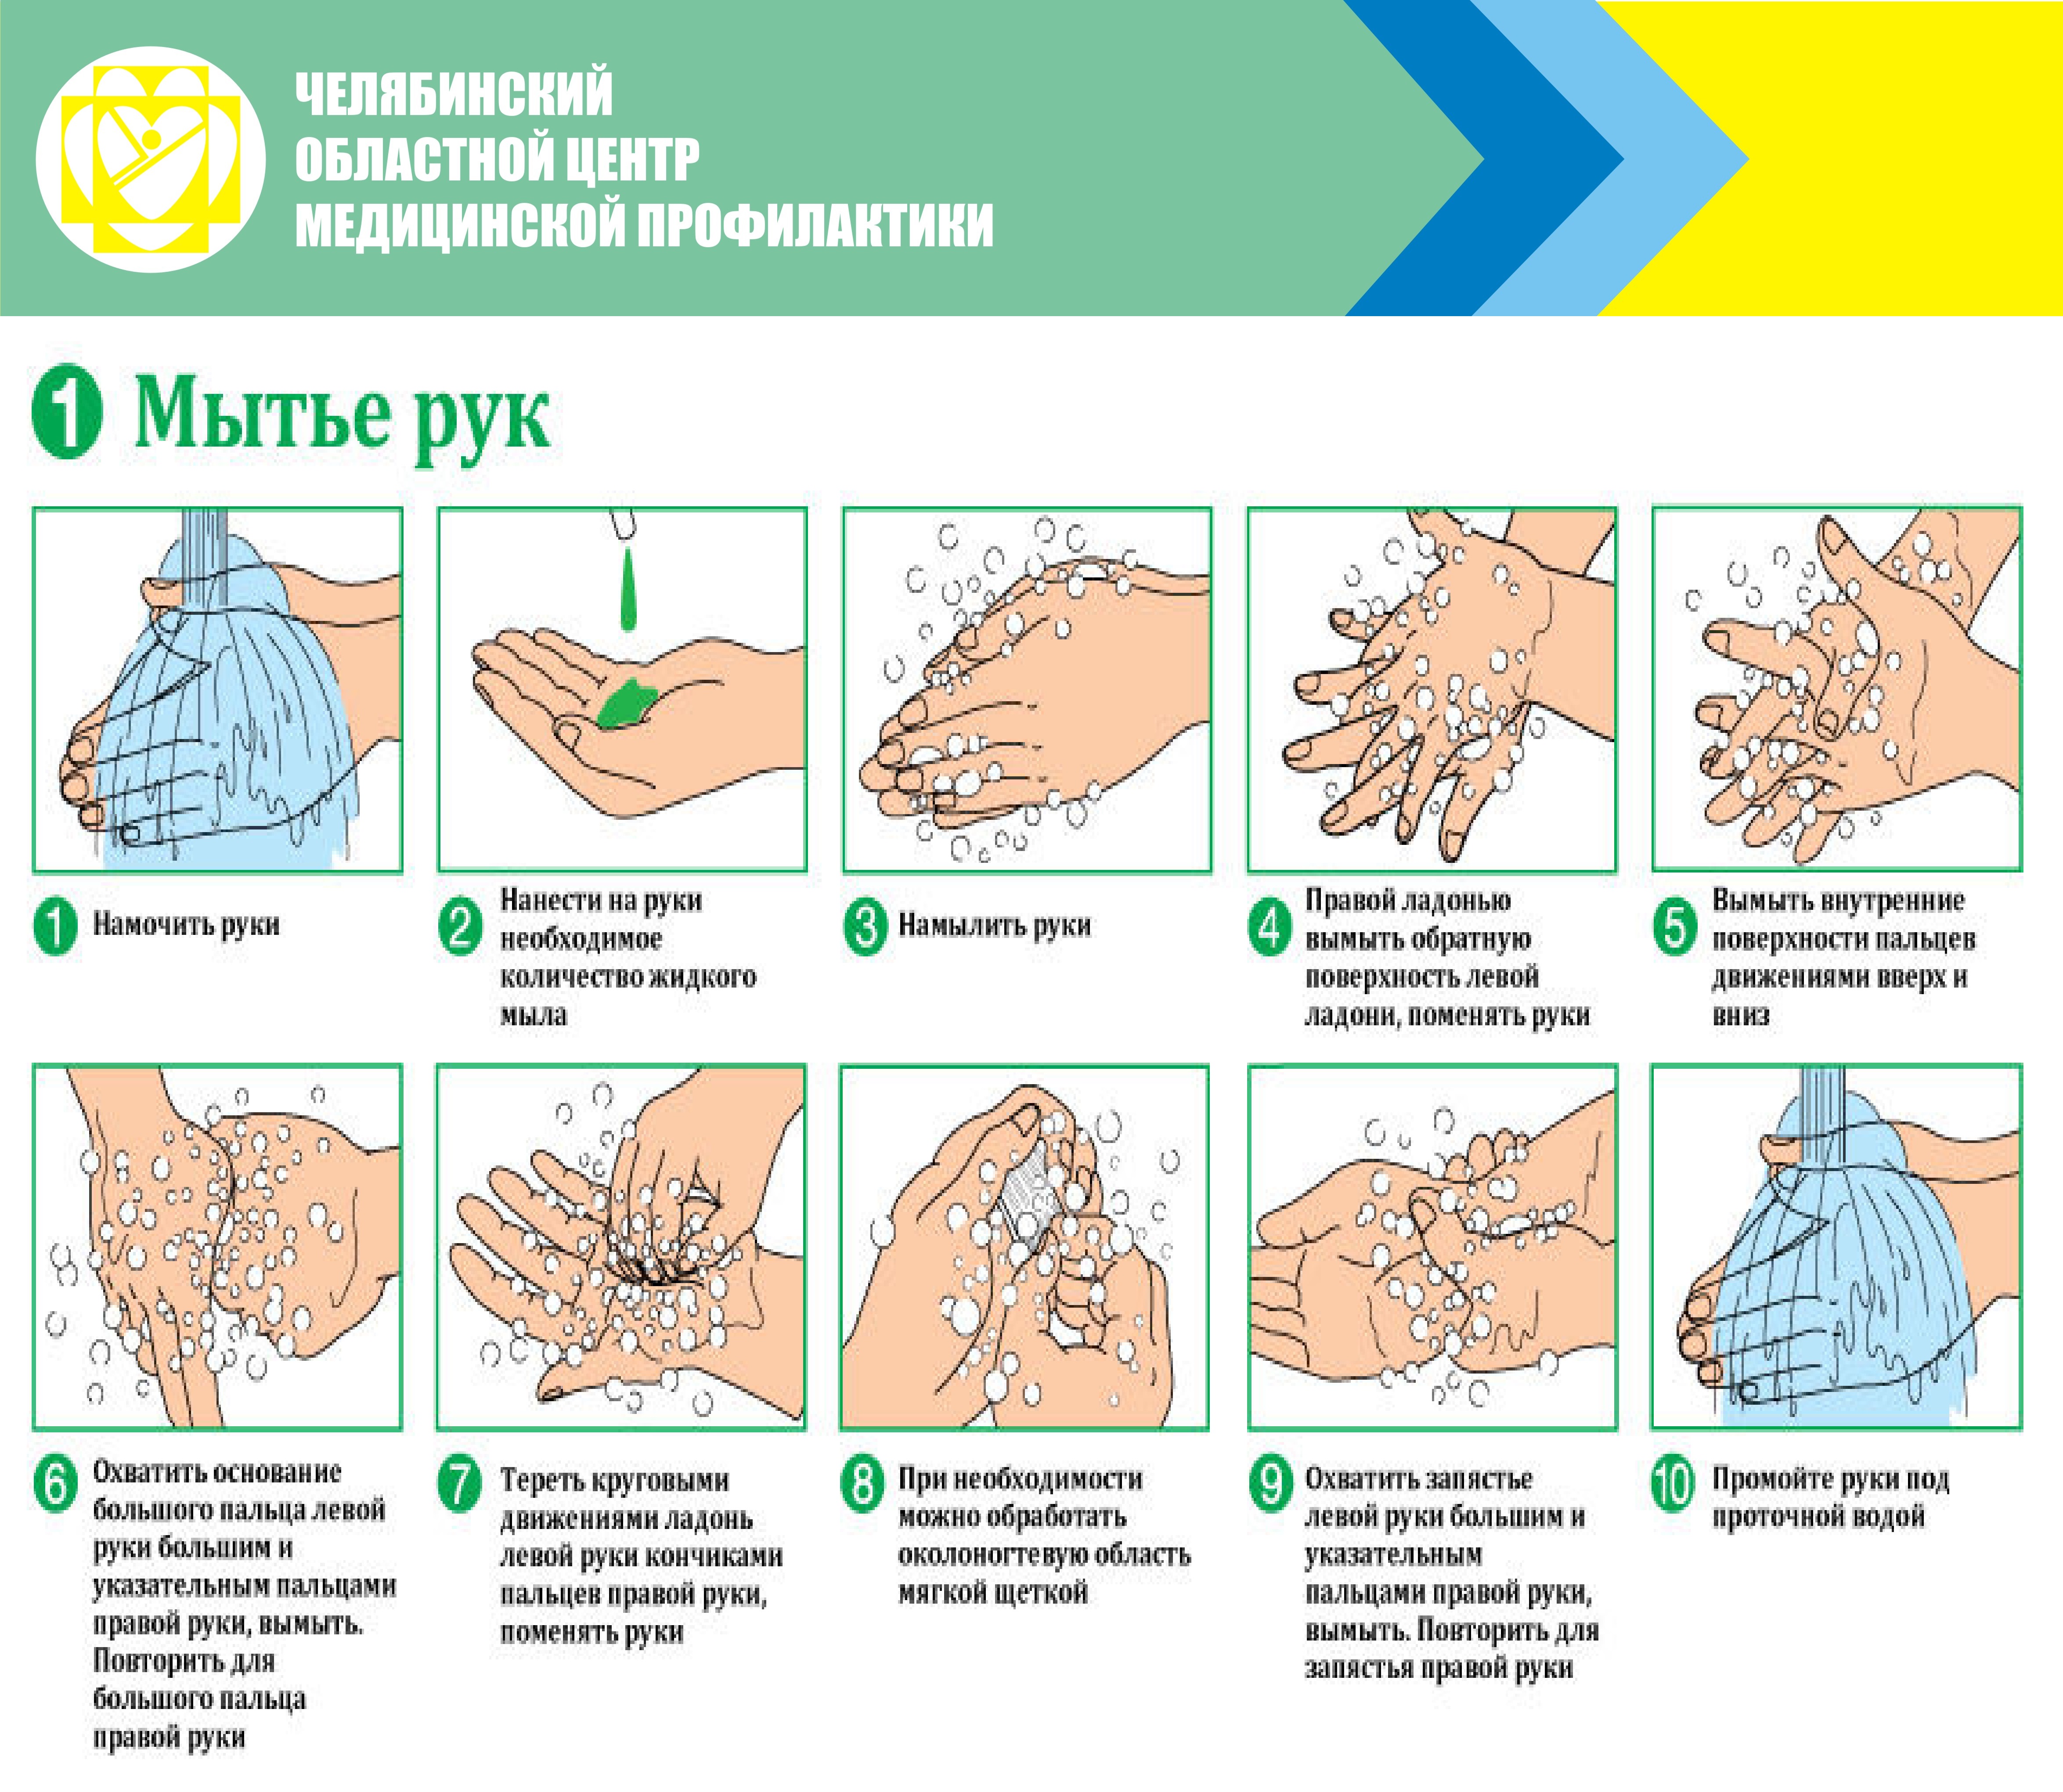 Температура при мытье рук должна быть. Алгоритм гигиенической обработки рук мытье. Гигиеническая обработка рук мытье рук с использованием. Правила гигиенического мытья рук. Инструкция мытья рук.